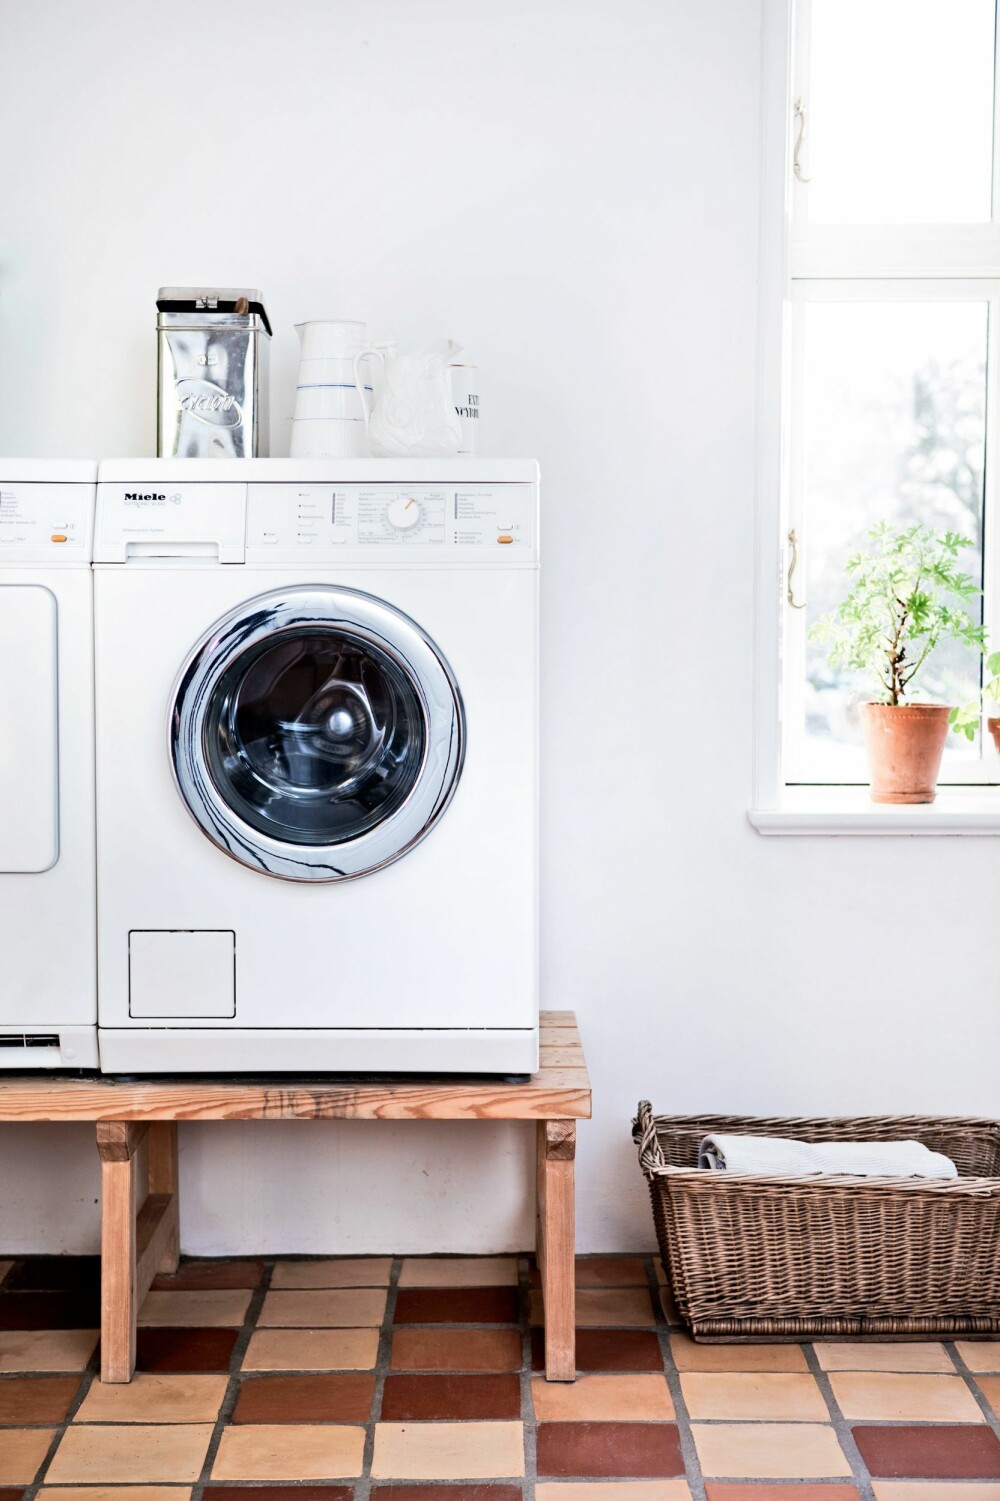 HØYT HEVET: Spar ryggen ved å lage et stativ til vaskemaskinen, så slipper du å bøye deg så mye. FOTO: Tia Borgsmidt